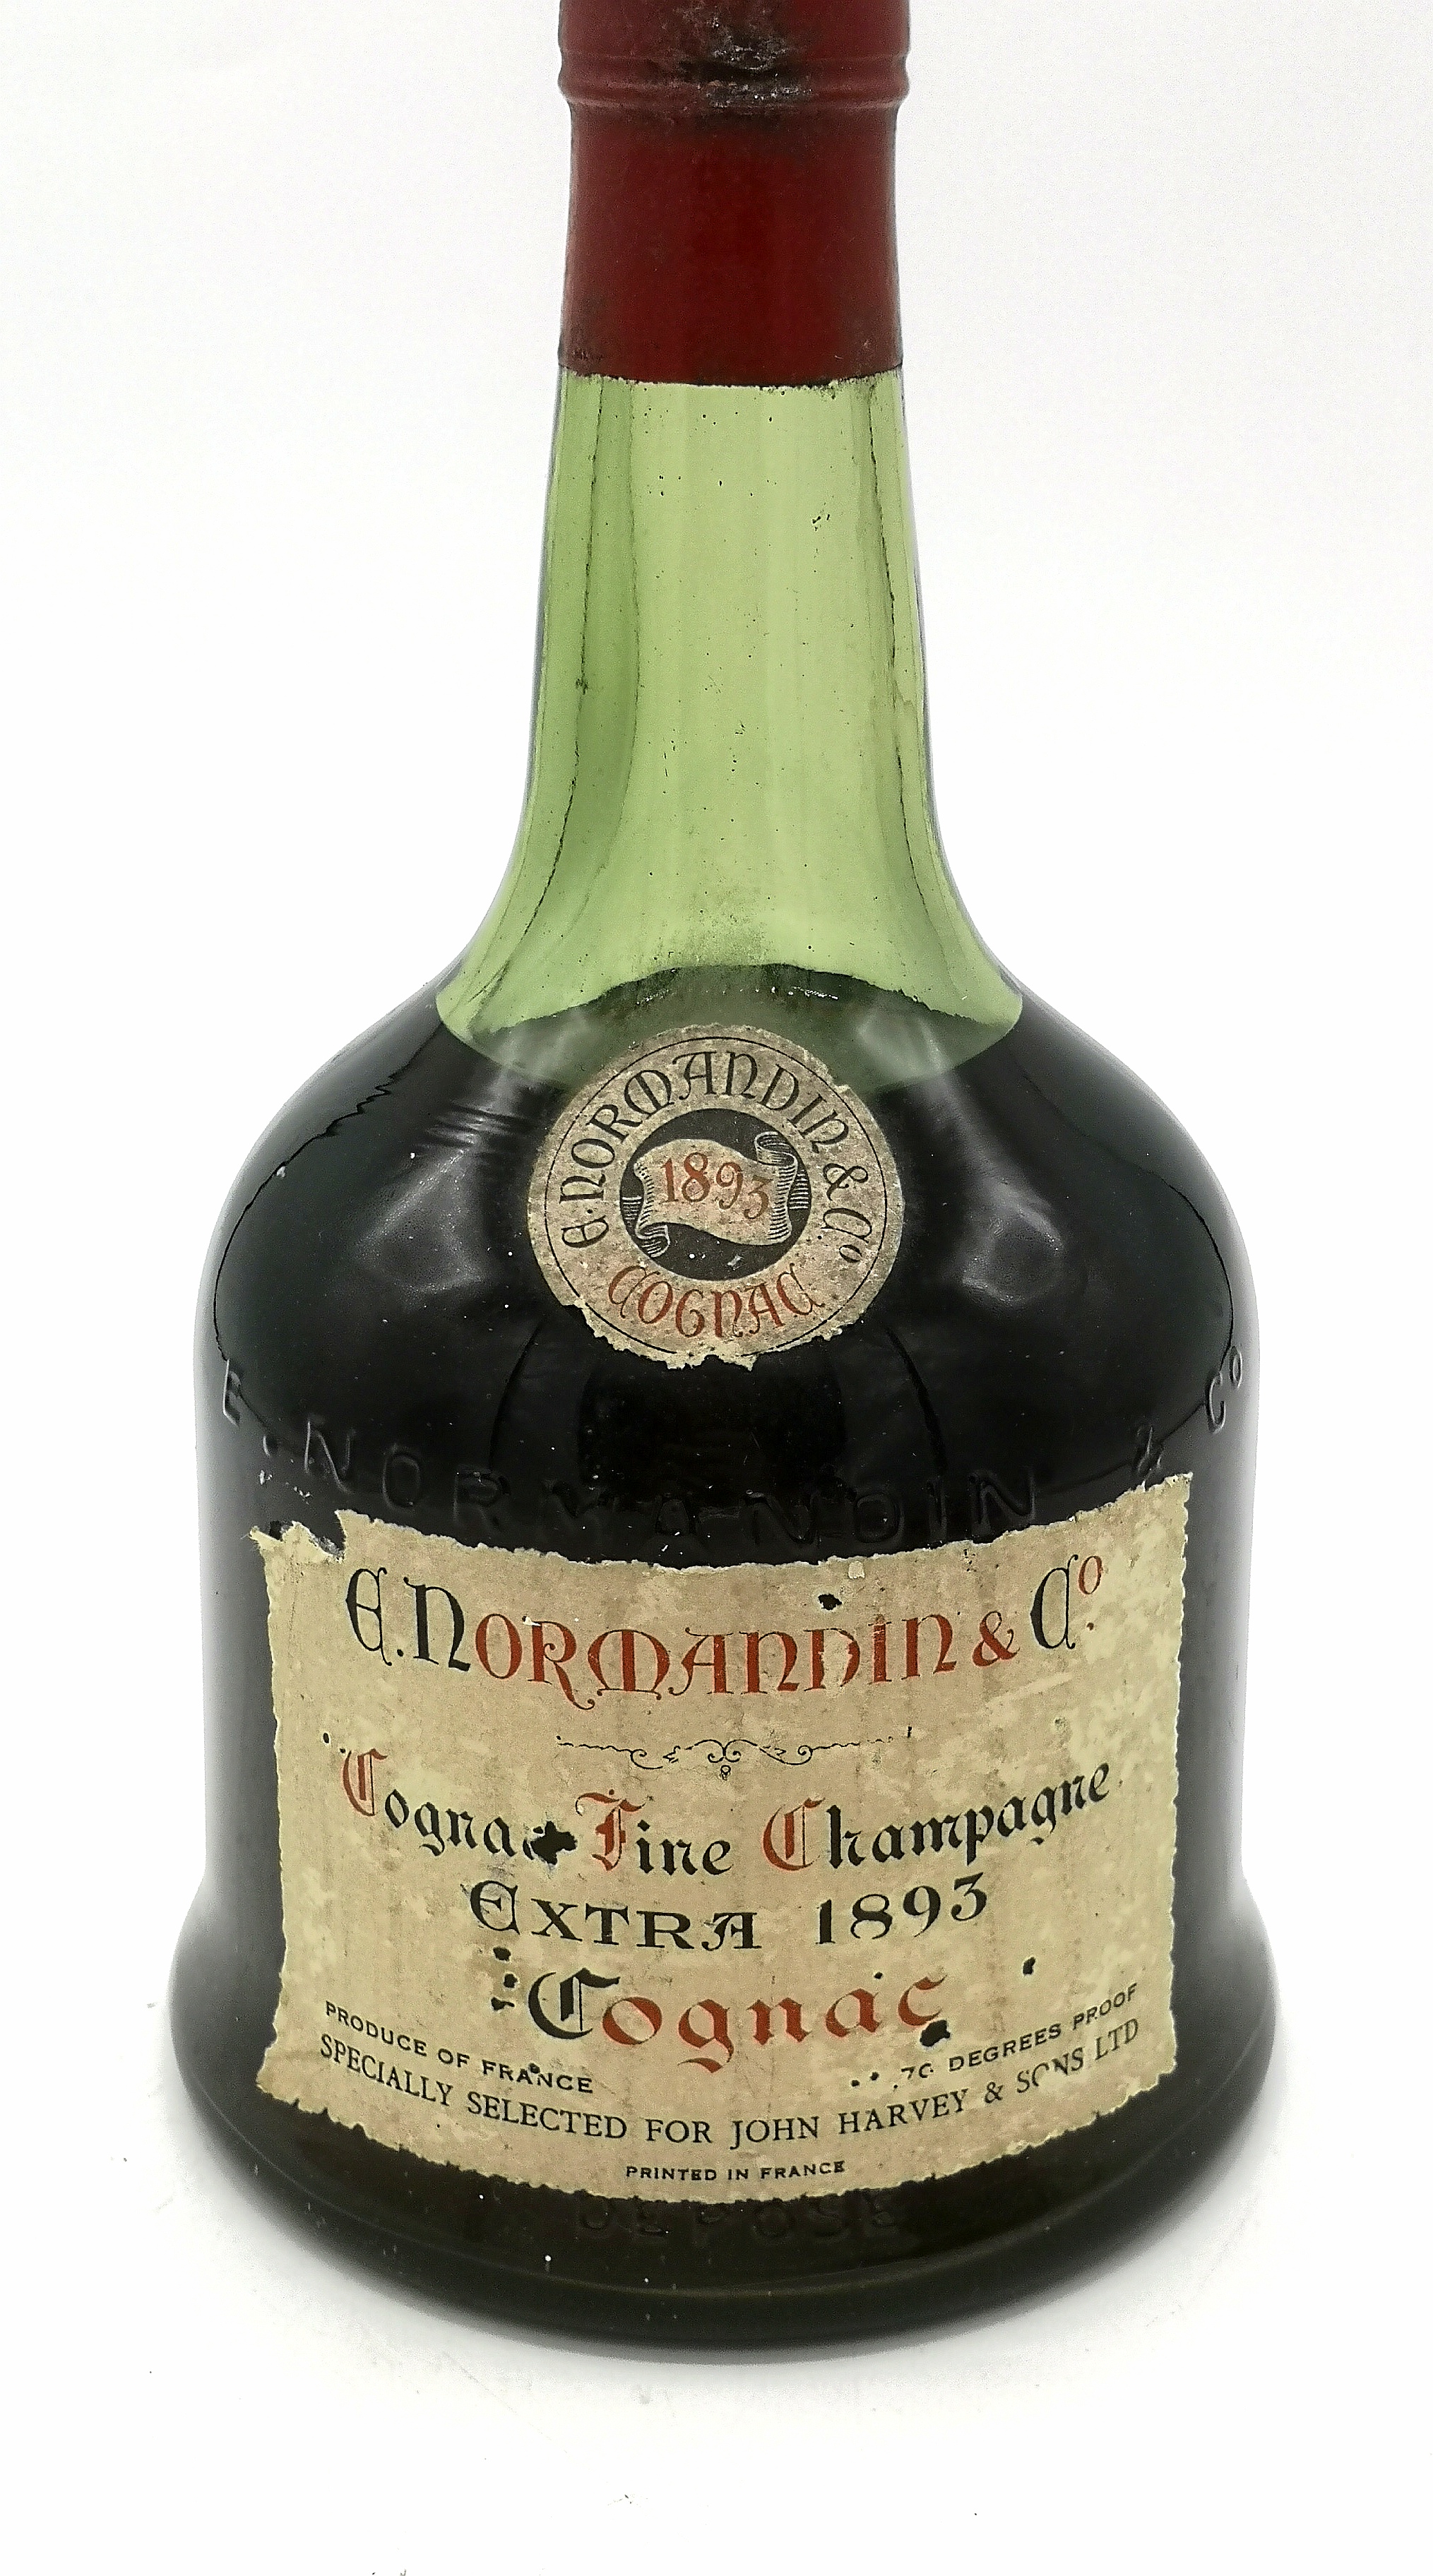 1893 E. Normandie & Co. cognac